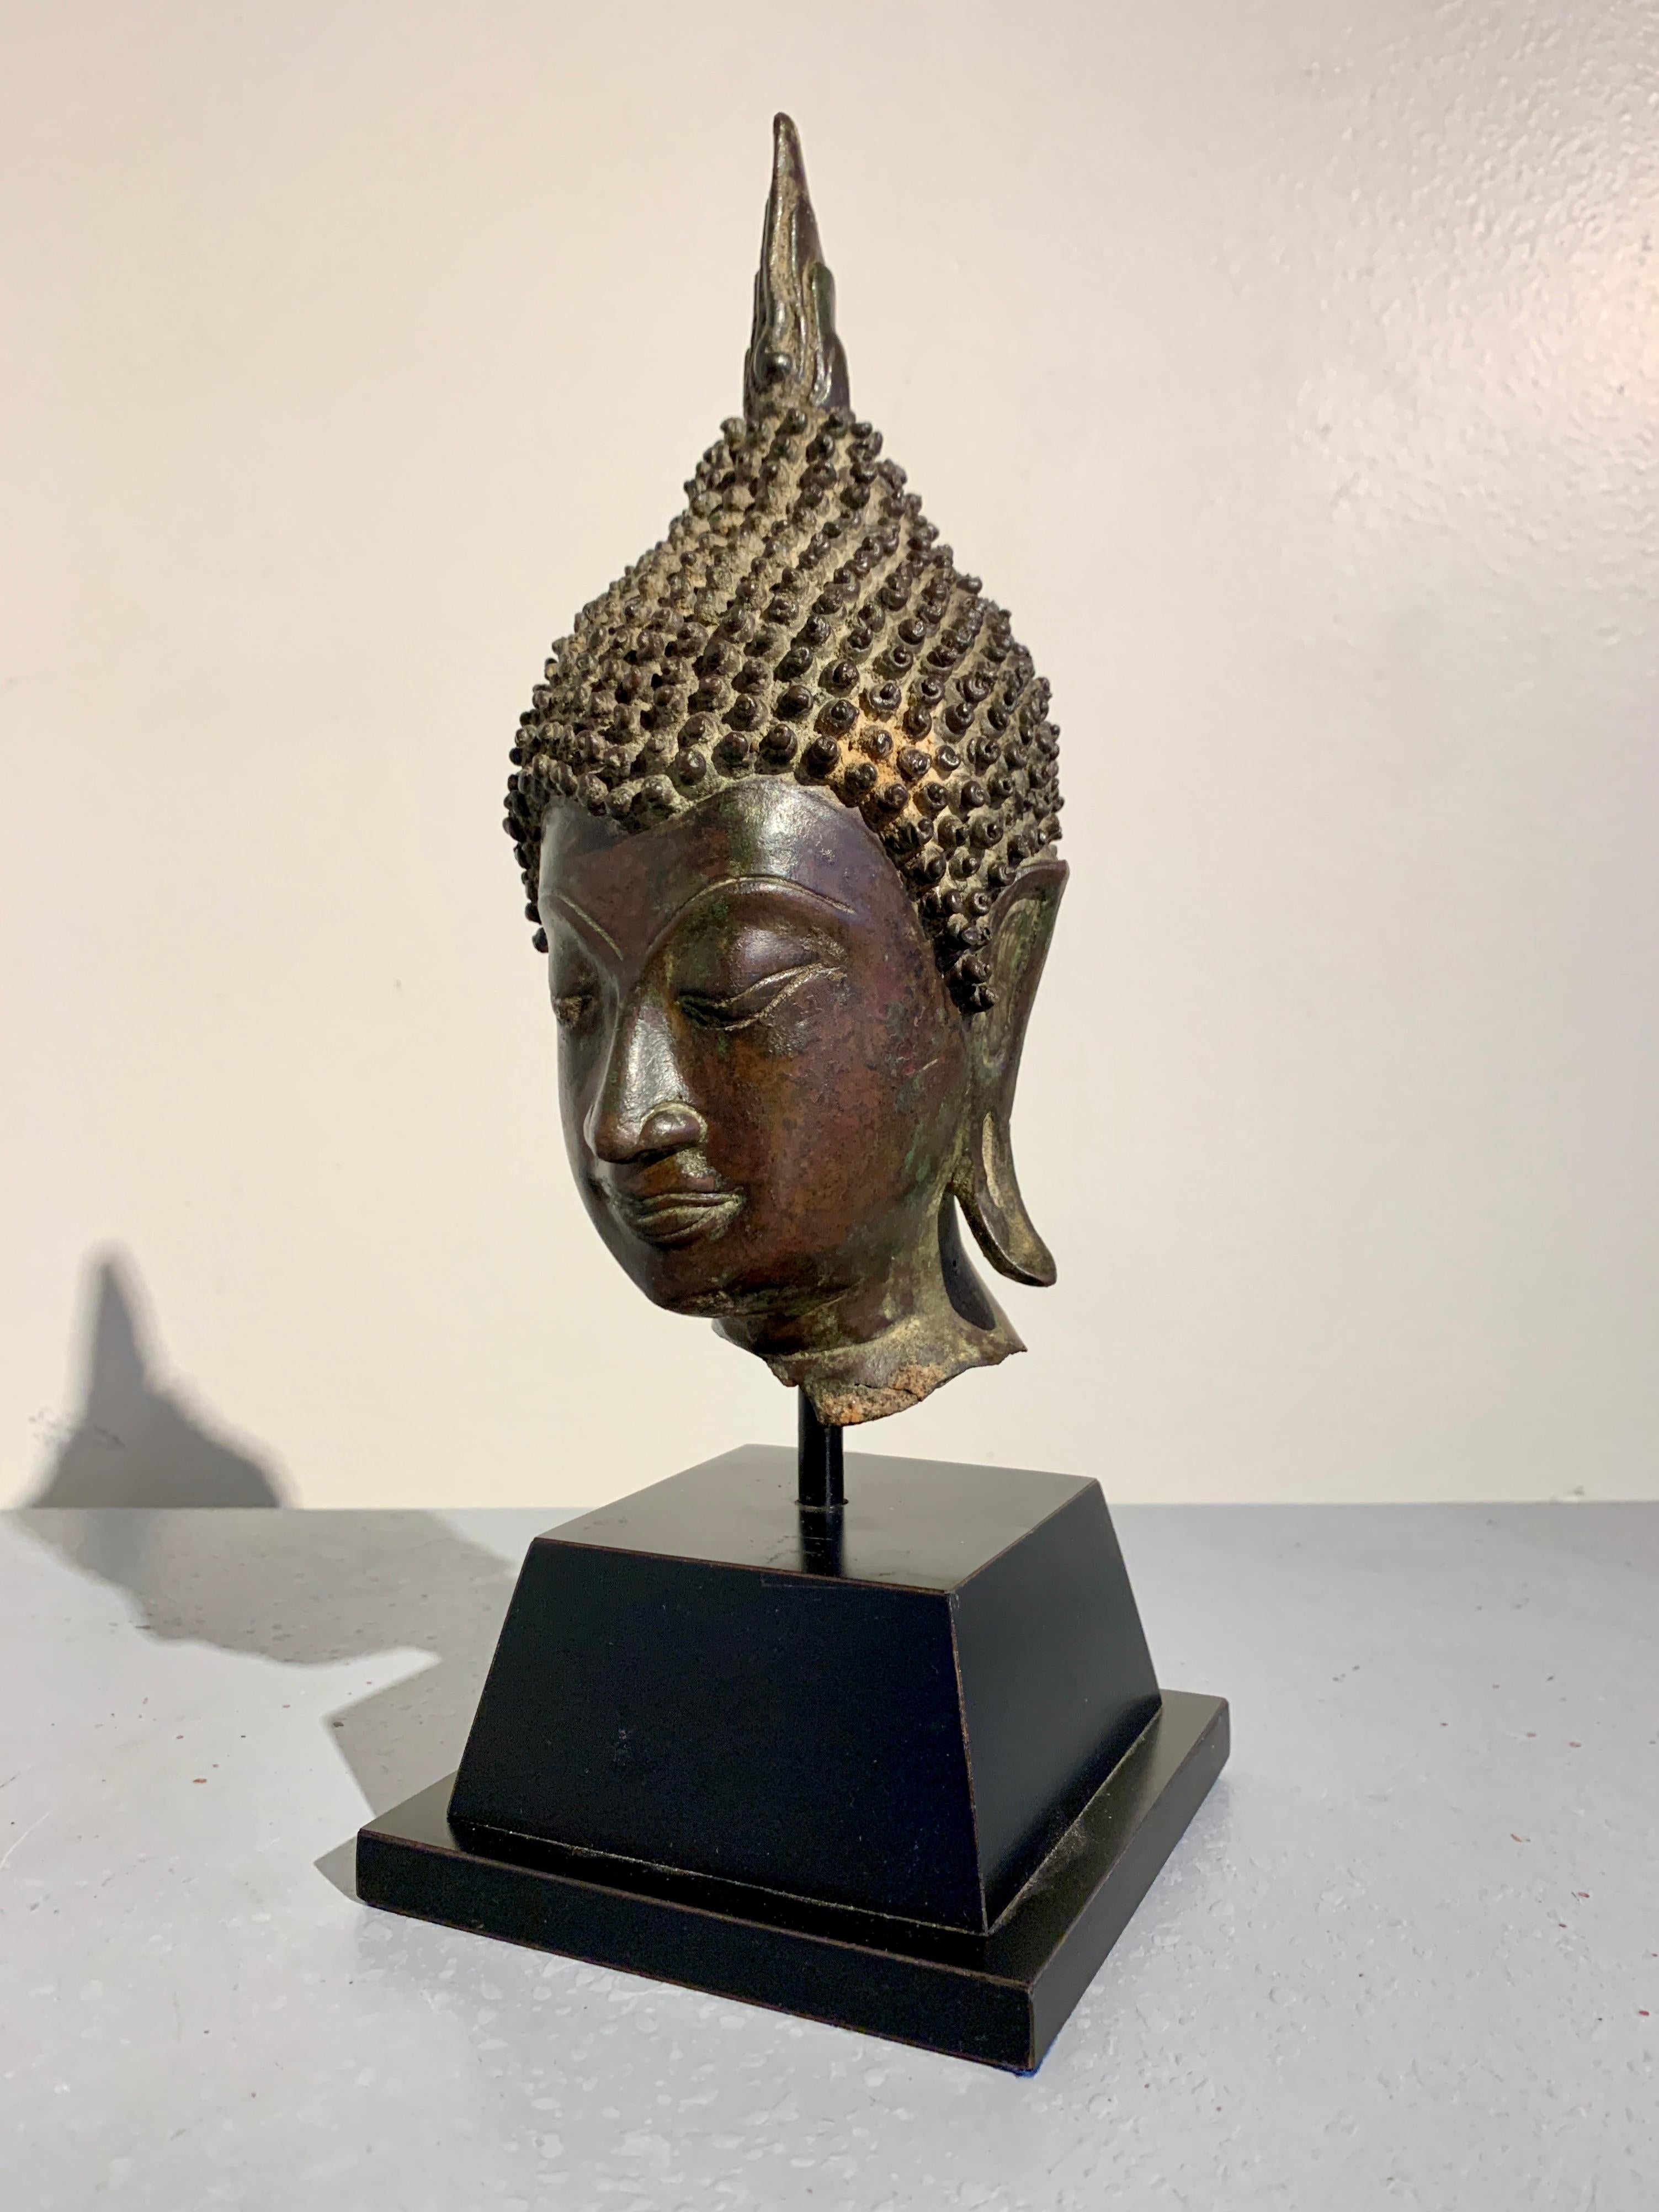 Exquise tête de Bouddha thaïlandaise en bronze moulé, royaume de Sukhothai, vers le XVe siècle, Thaïlande.

Le visage agréable du Bouddha, avec sa forme ovale et étroite et ses traits aigus, est exemplaire du style Sukhothai. Le Bouddha regarde vers